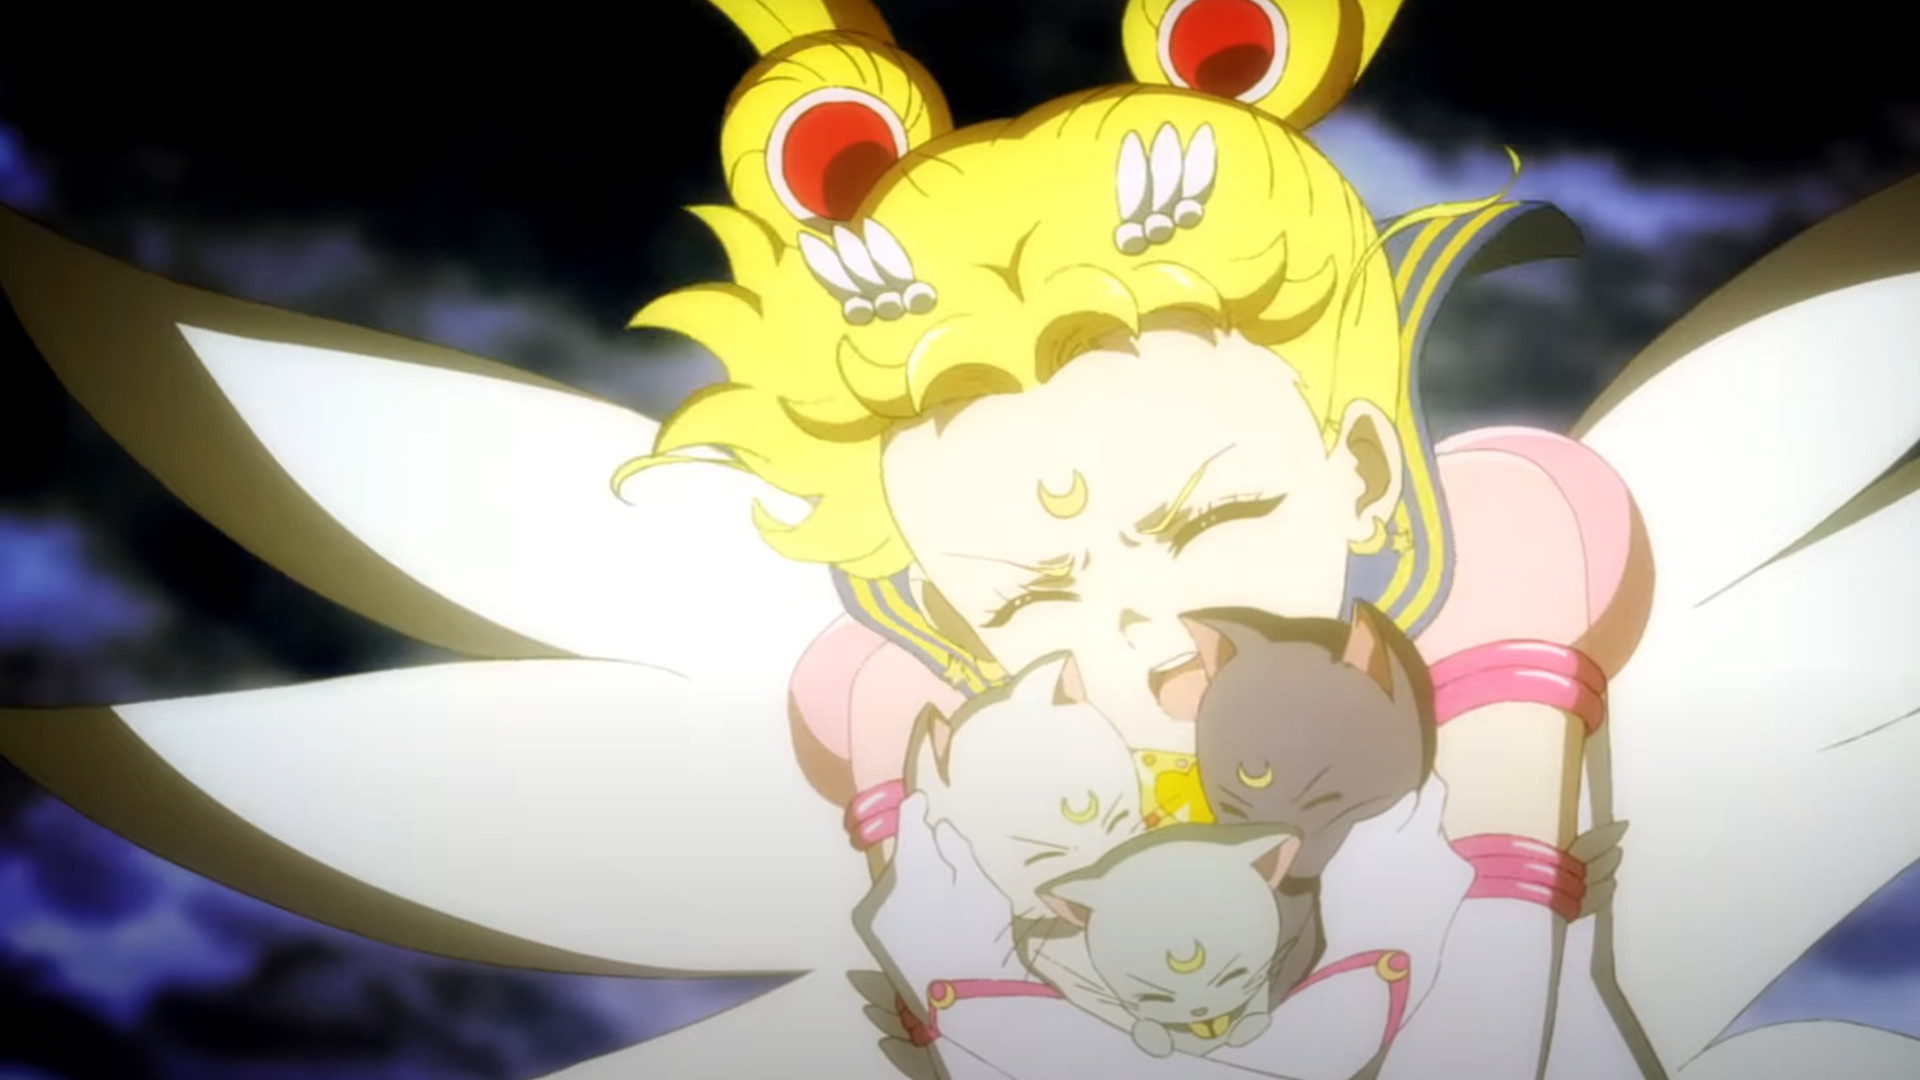 Sailor Moon Cosmos - Cantora da música do filme é revelada - AnimeNew